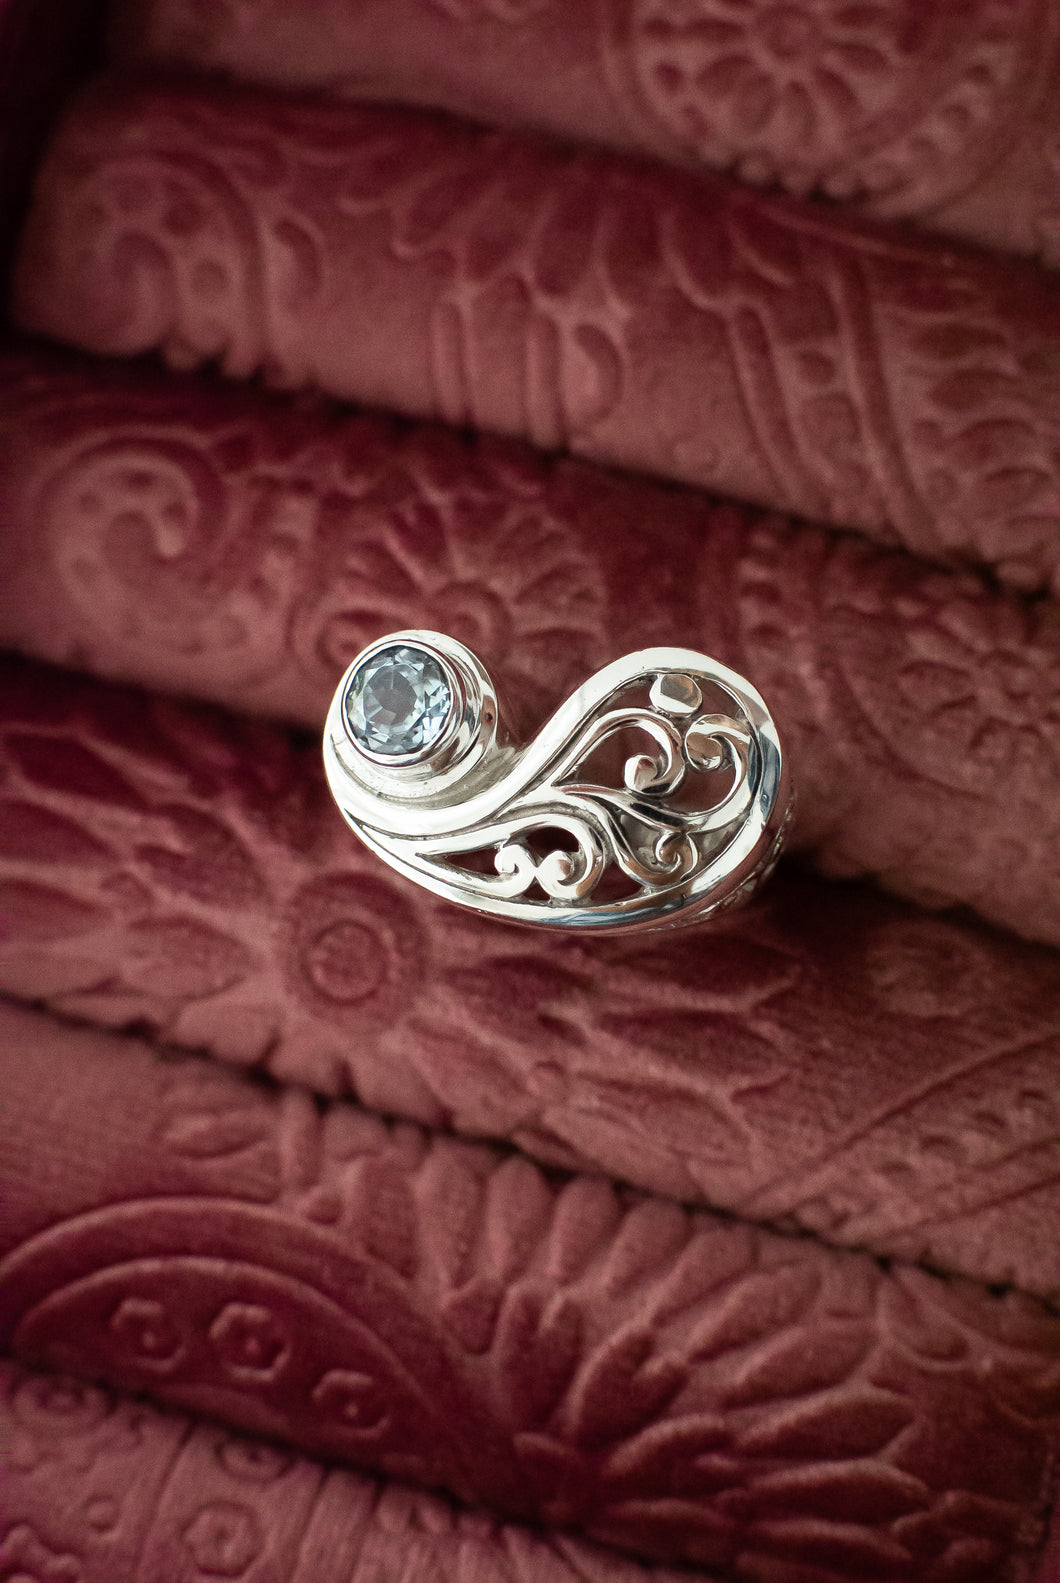 Ornate Sterling Silver Topaz Ring, Delross Design Jeweller, Brisbane Jeweller, Chermside Jeweller, Custom Jewellery